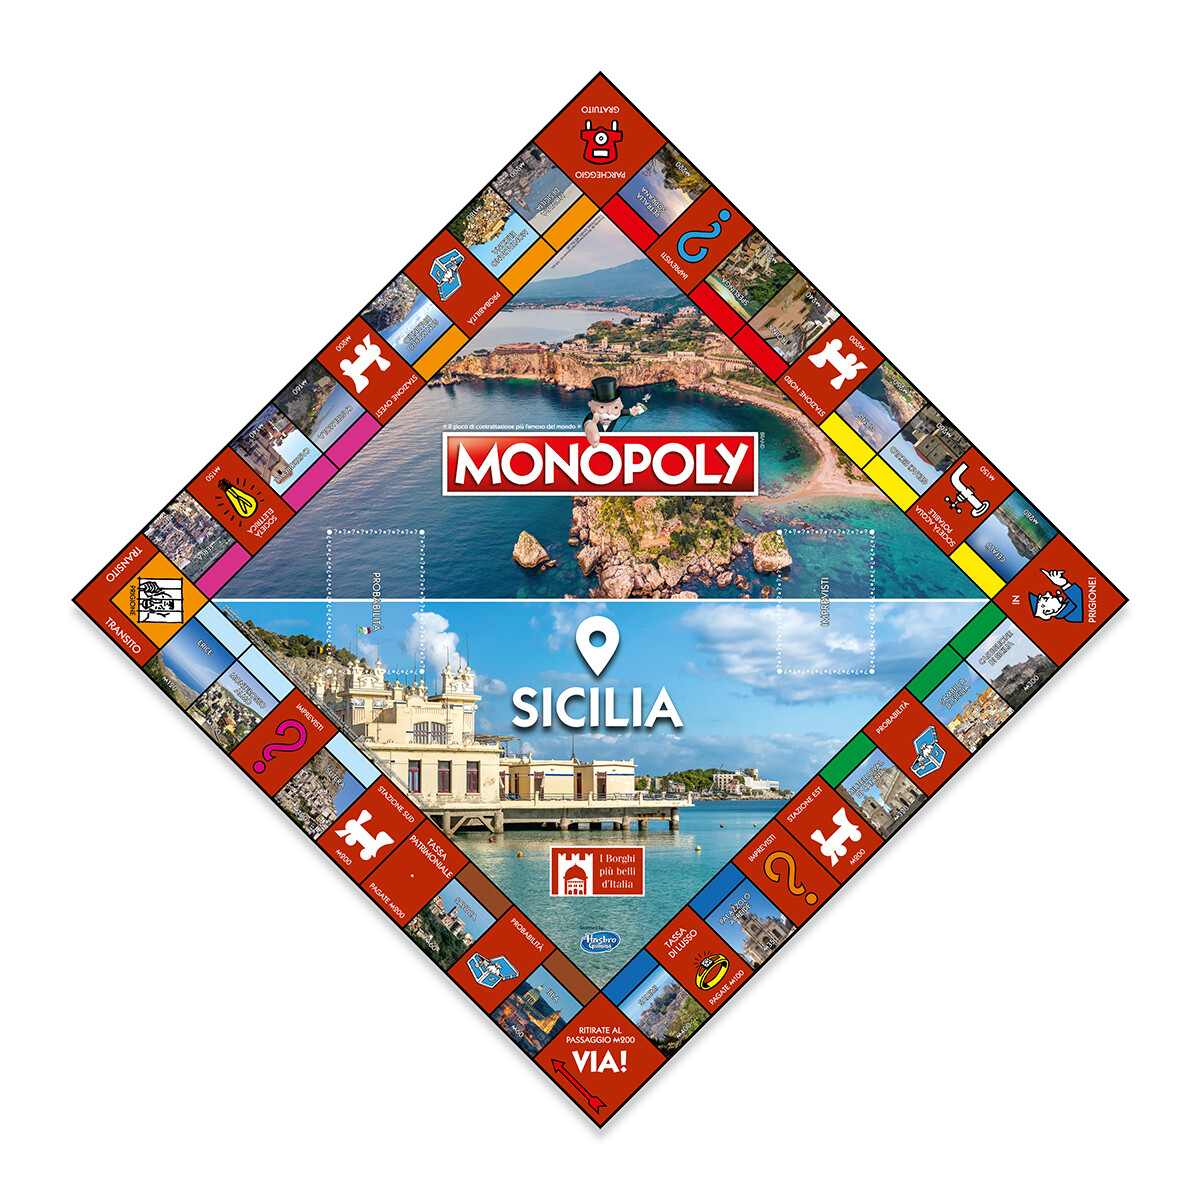 Monopoly - eidizione i borghi più belli d'itallia - sicilia - MONOPOLY